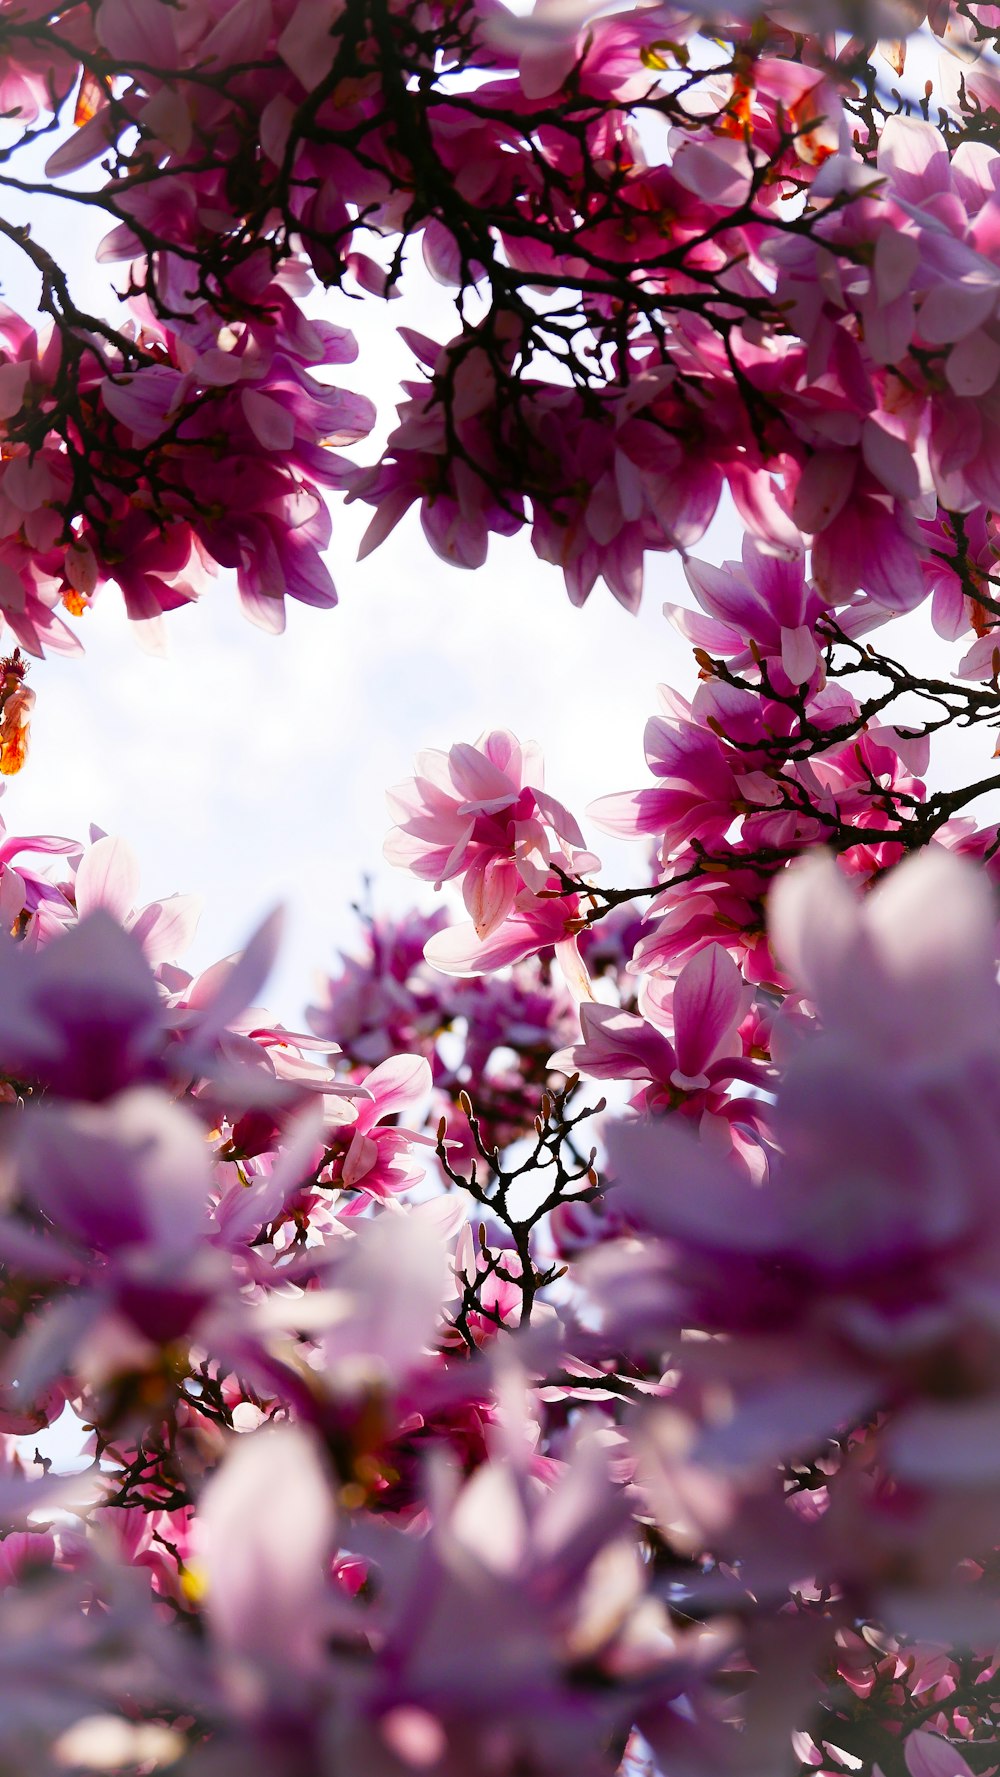 albero di fiori dai petali rosa e bianchi